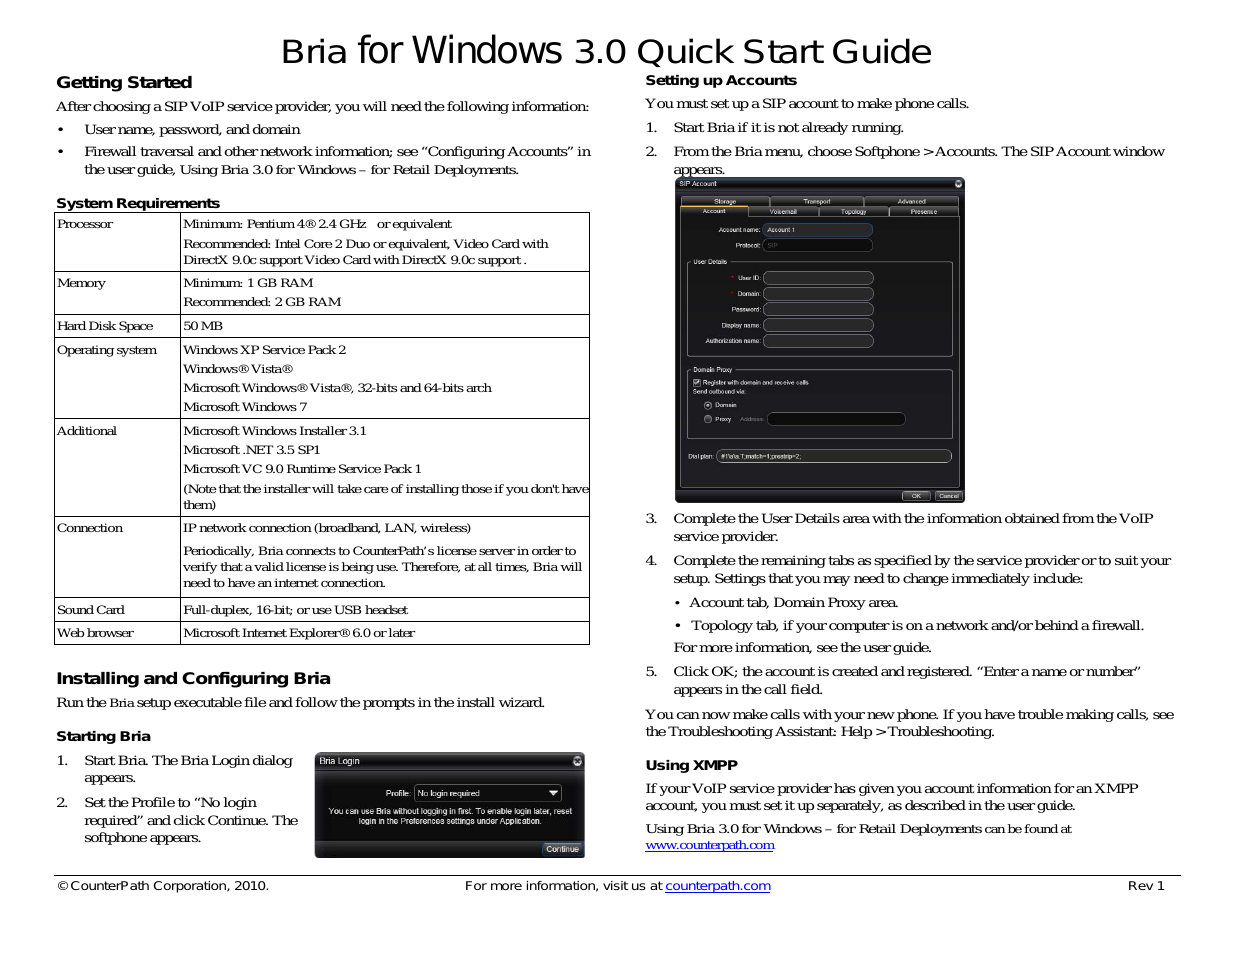 Bria 3.0 for Windows Quick Start Guide